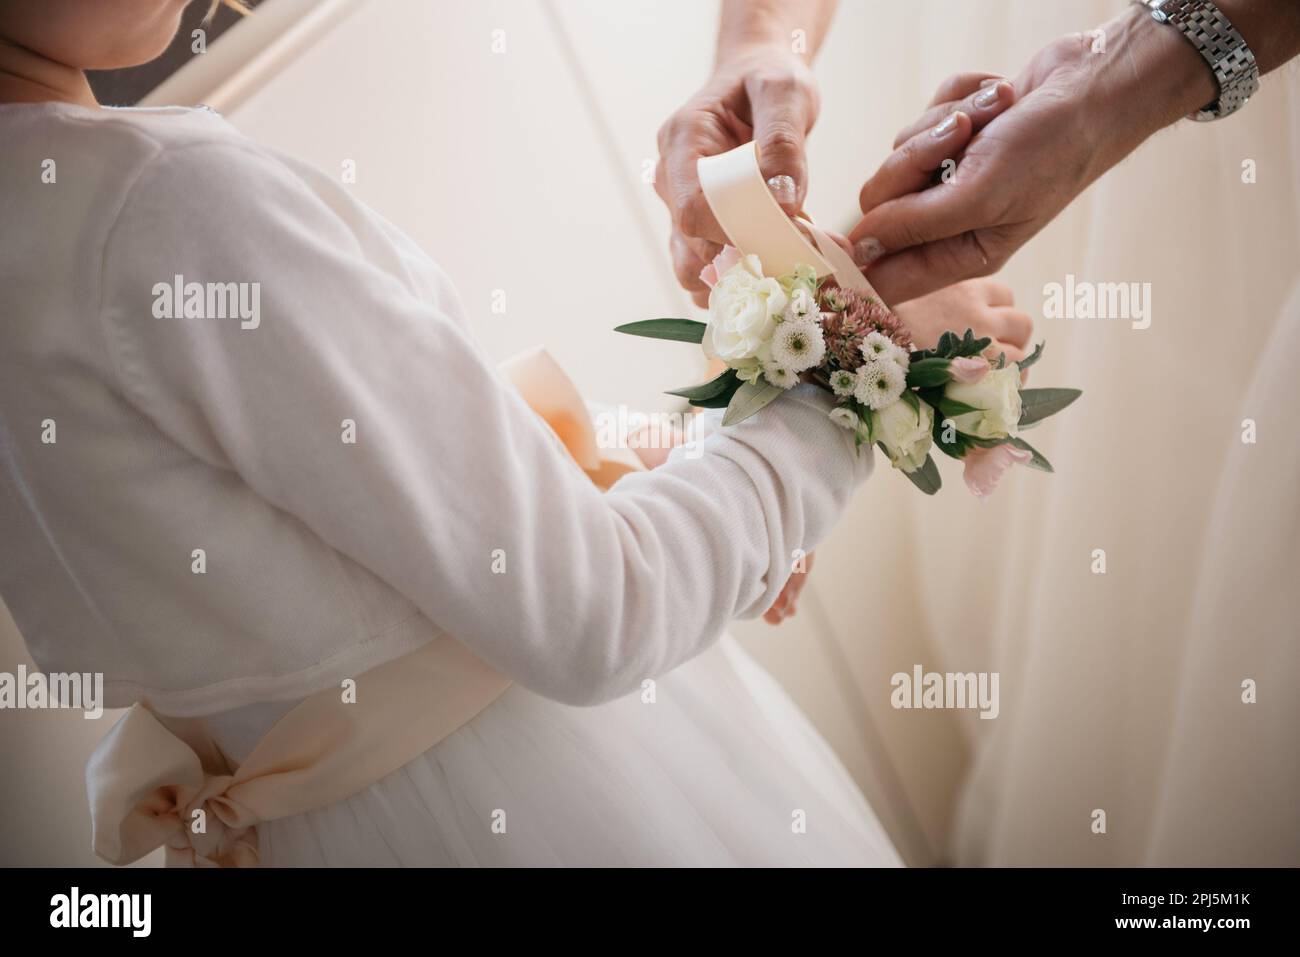 Eine lächelnde Brautjungfer hilft einem jungen Mädchen, indem sie eine Blumenapplikation sicher an ihrem Handgelenk befestigt Stockfoto